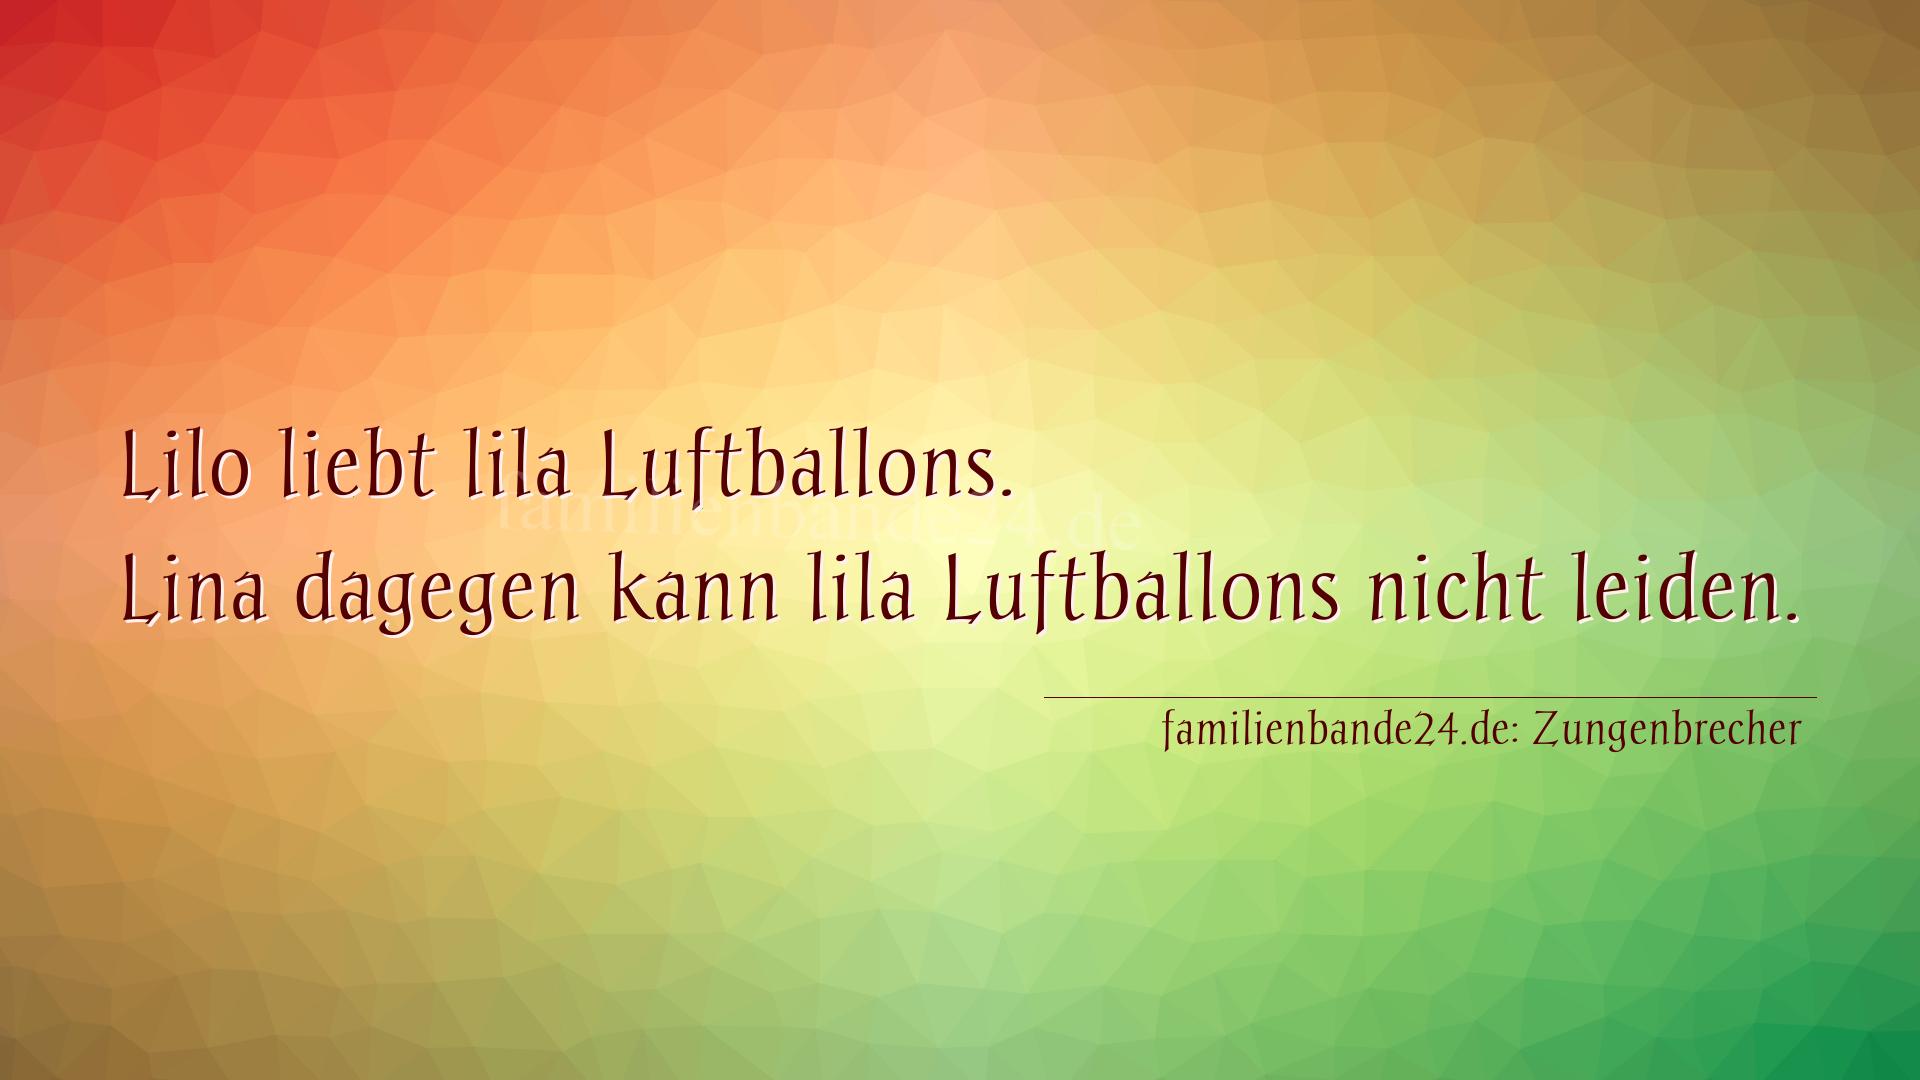 Zungenbrecher Nummer 778: Lilo liebt lila Luftballons. Lina dagegen kann lila Luftba [...]